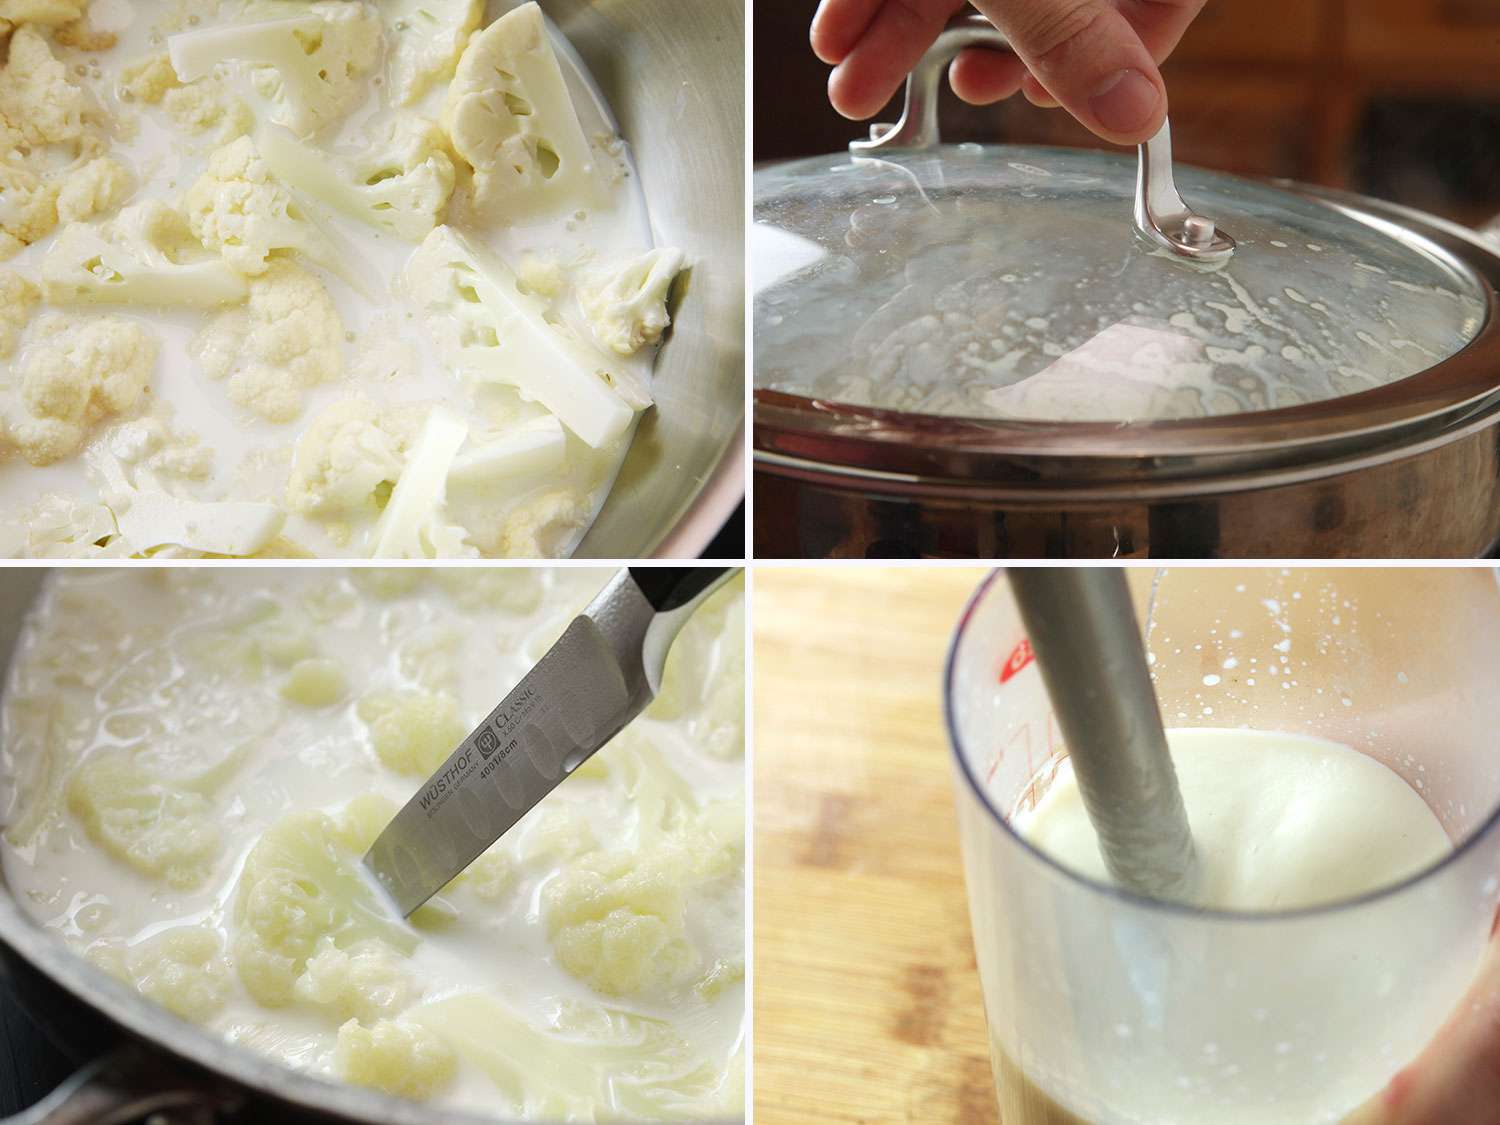 拼贴照片:第一张是用素食牛奶蒸花椰菜。第二个是一只手打开一个有冷凝物的有盖的锅。第三步是用刀检查蒸好的菜花是否熟透。第四步是用浸入式搅拌机将花椰菜打成泥。